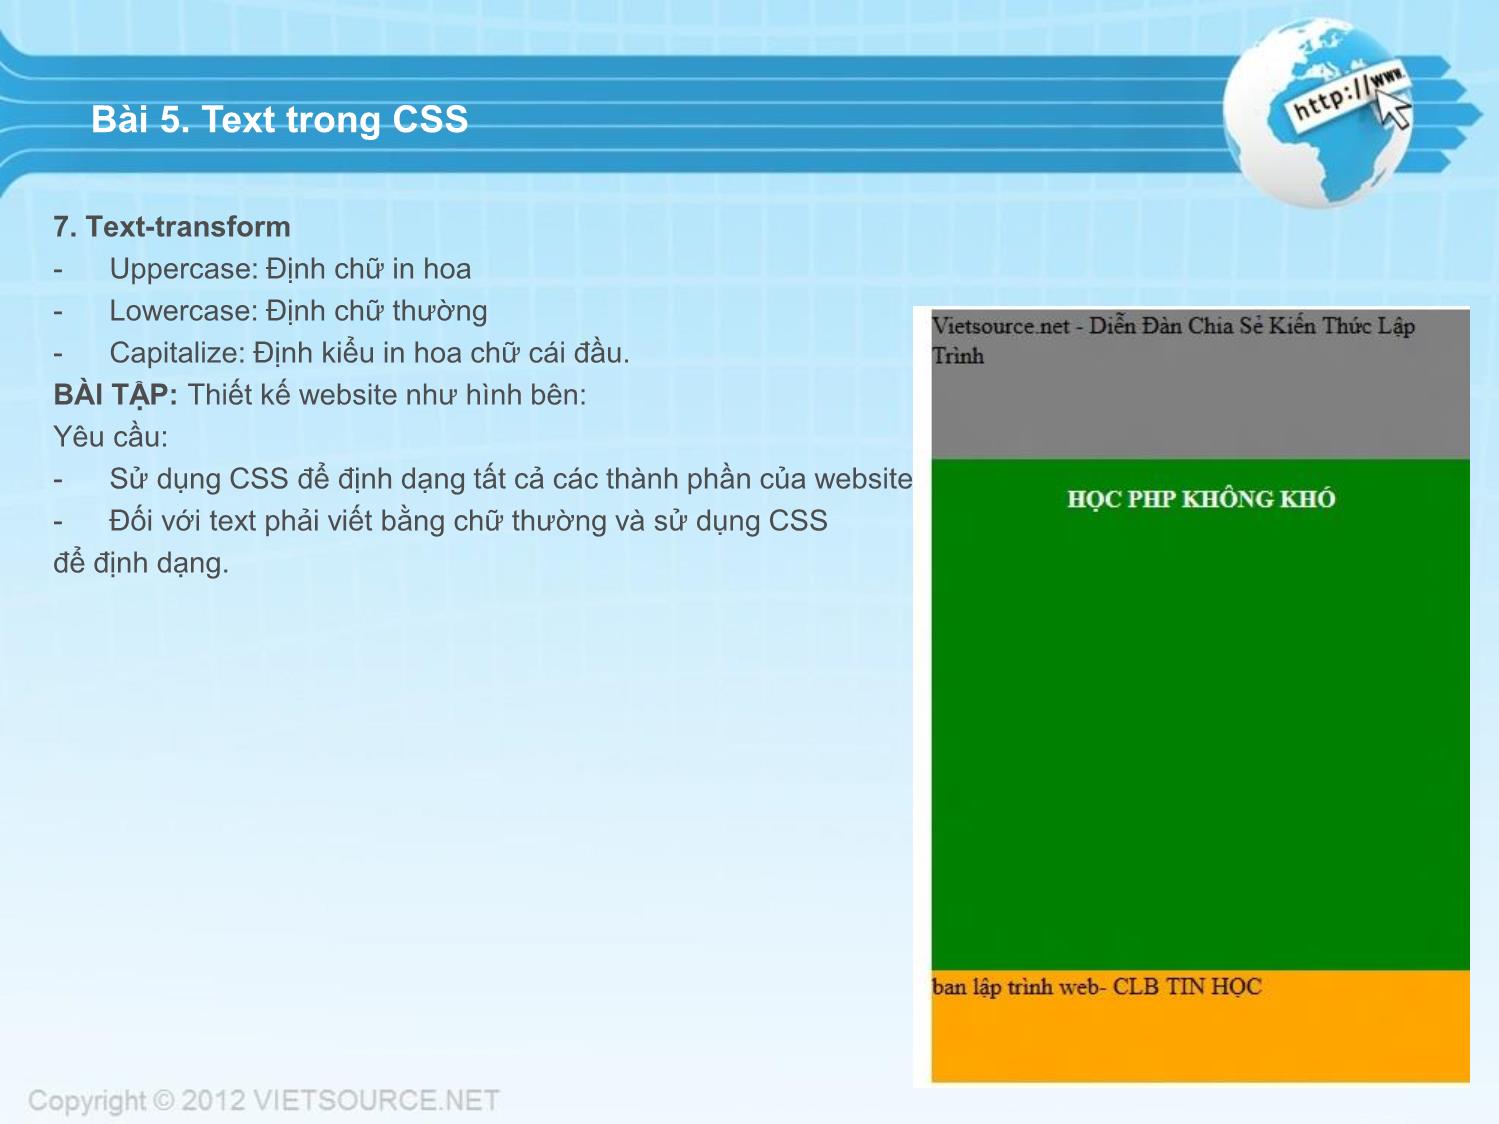 Bài giảng CSS - Bài 5: Text trong CSS trang 3